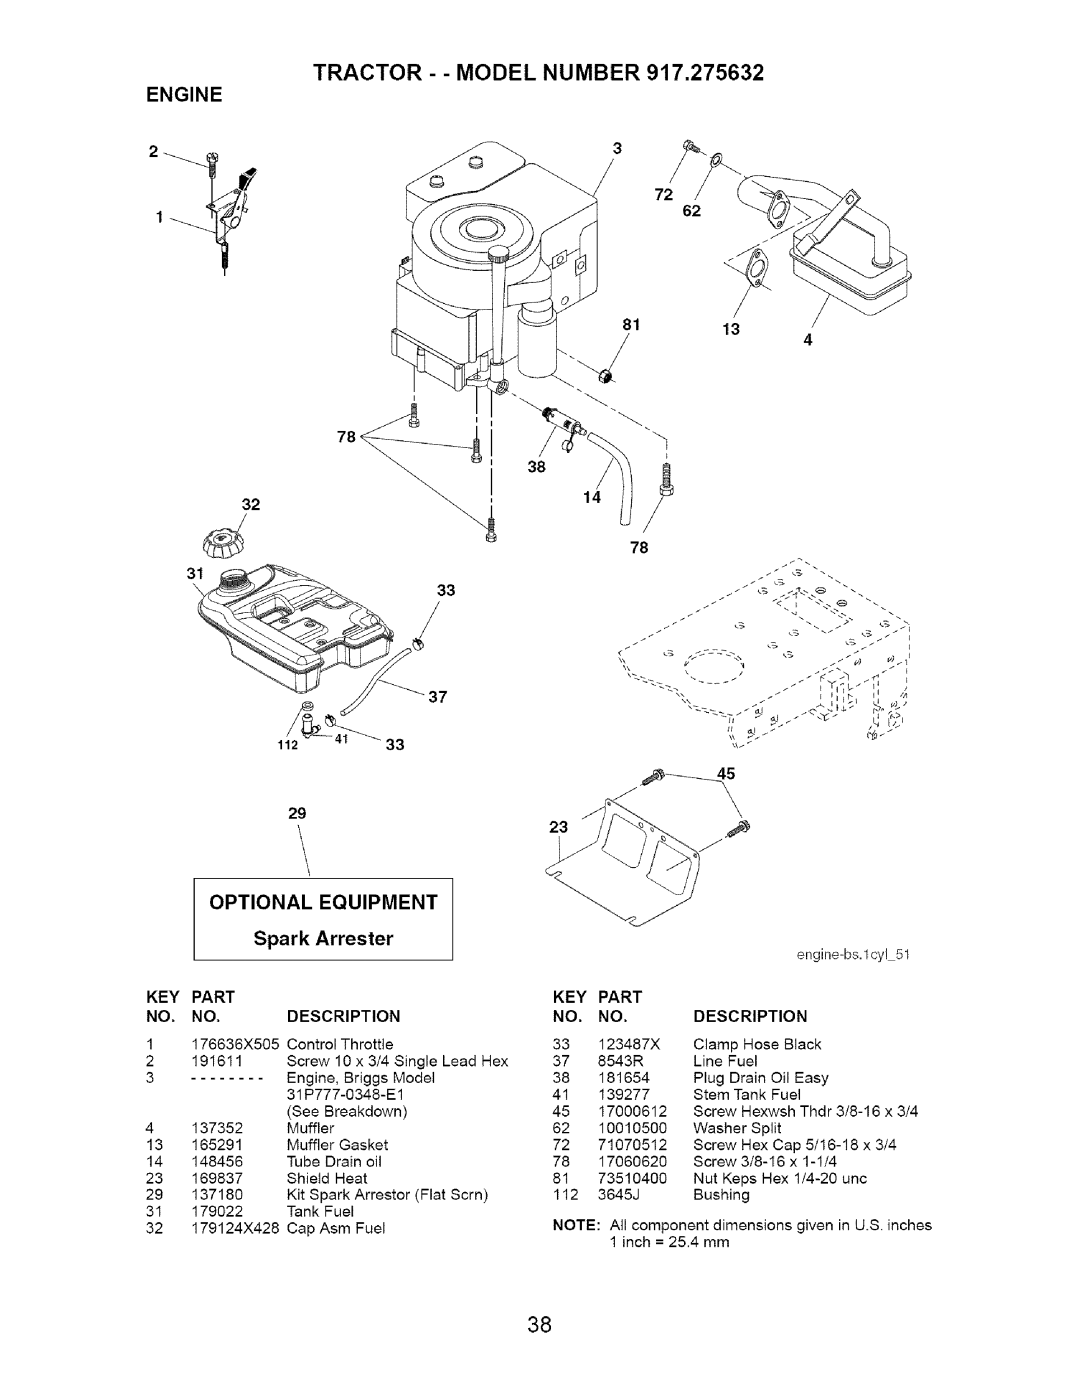 Craftsman 917.275632 manual 3 /3, TRACTOR - - MODEL NUMBER 917,275632, OPTIONAL EQUIPMENT Spark Arrester, Engine 